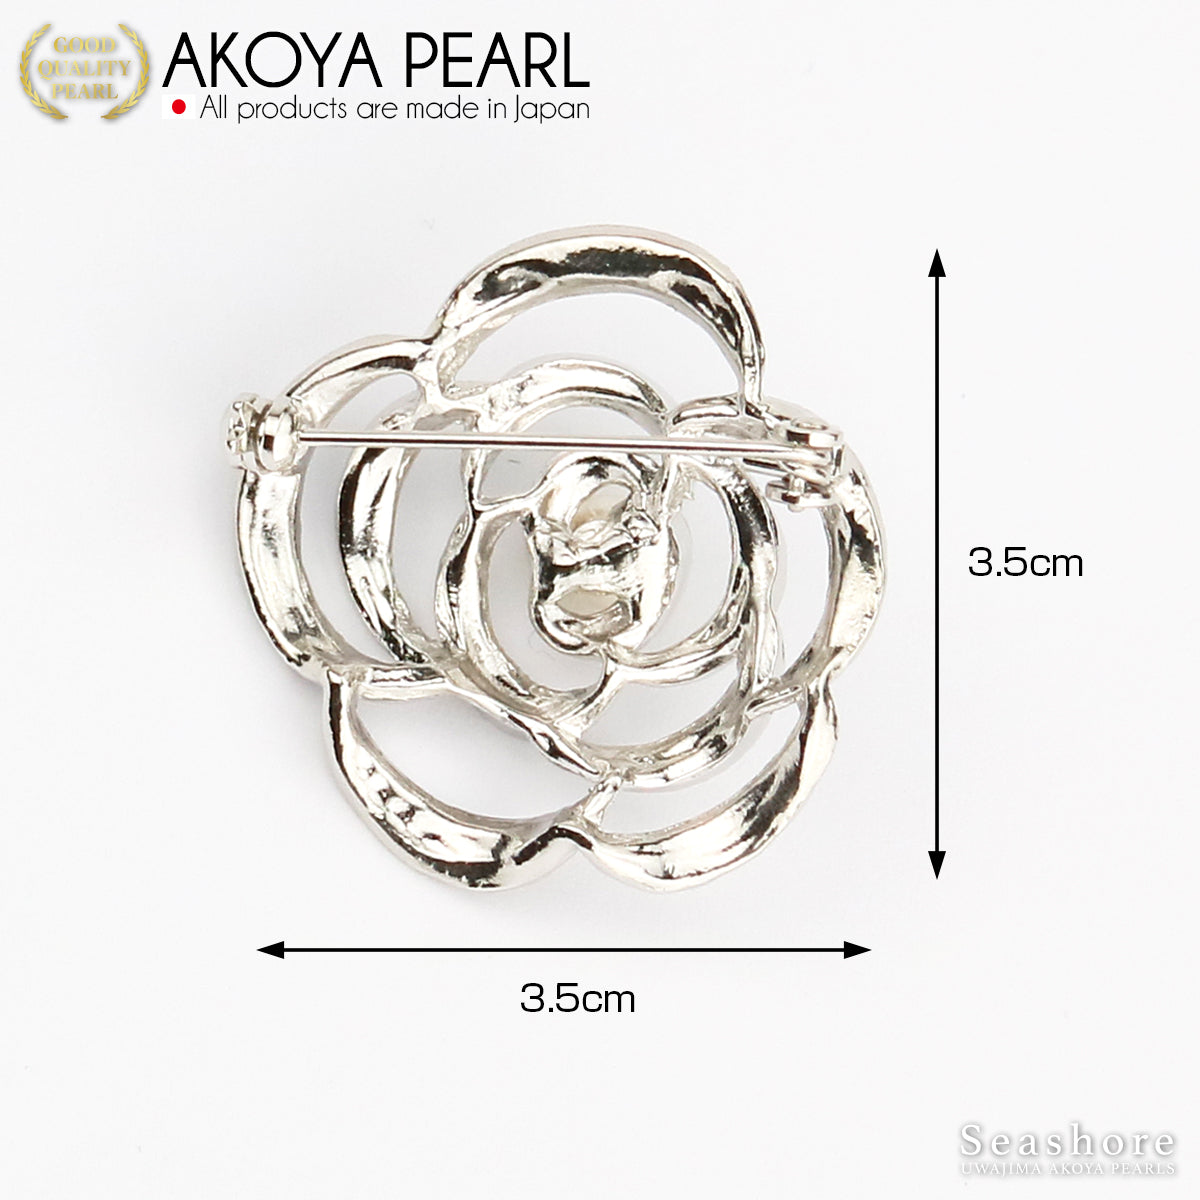 珍珠胸针设计花黄铜白色 5.0-6.5 毫米 Akoya 珍珠带储物盒 (3924)